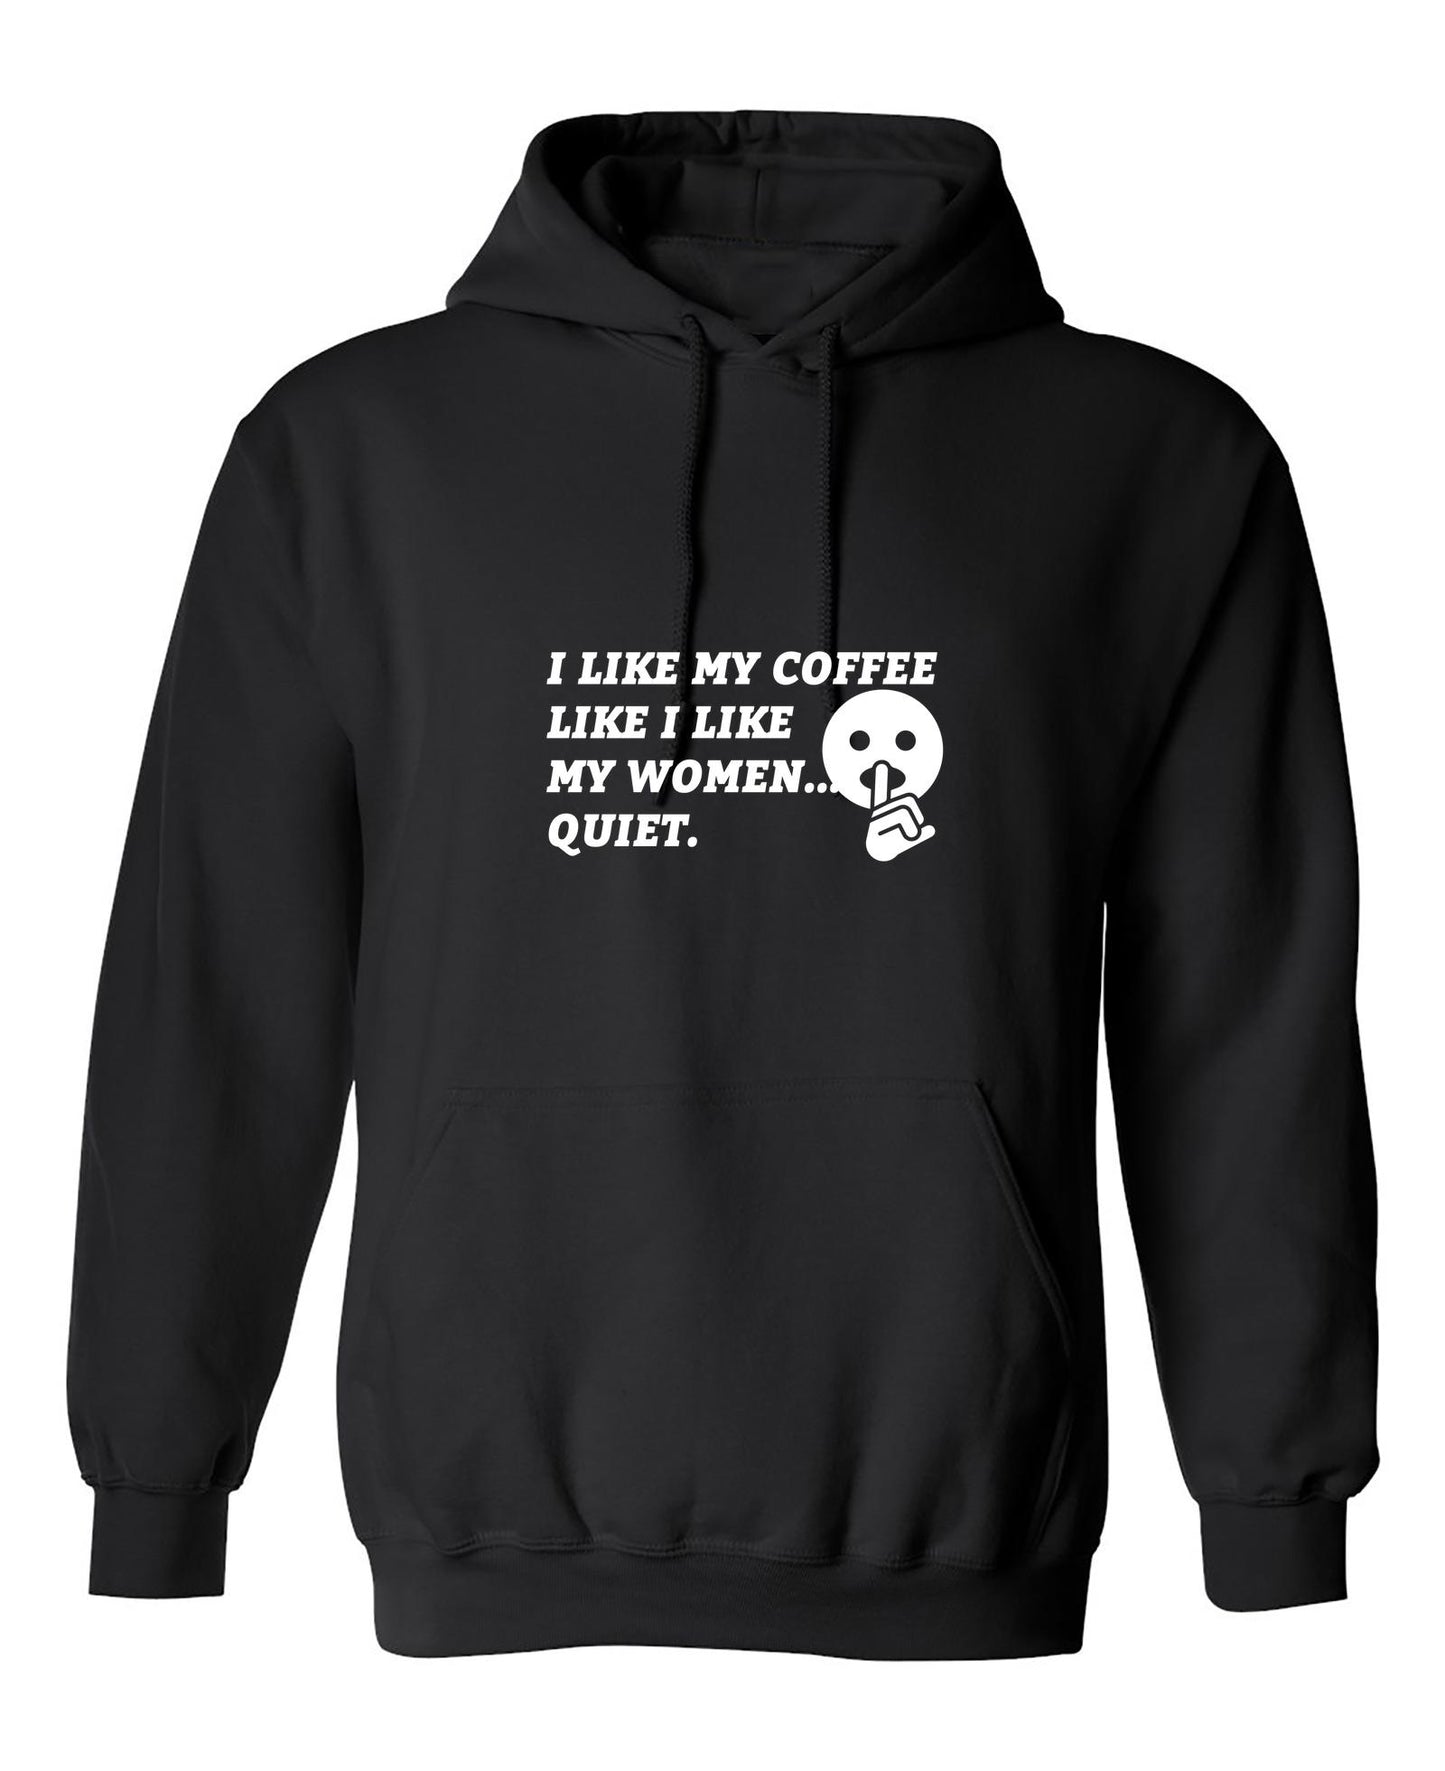 Funny T-Shirts design "I Like My Coffee Like I like My Women"